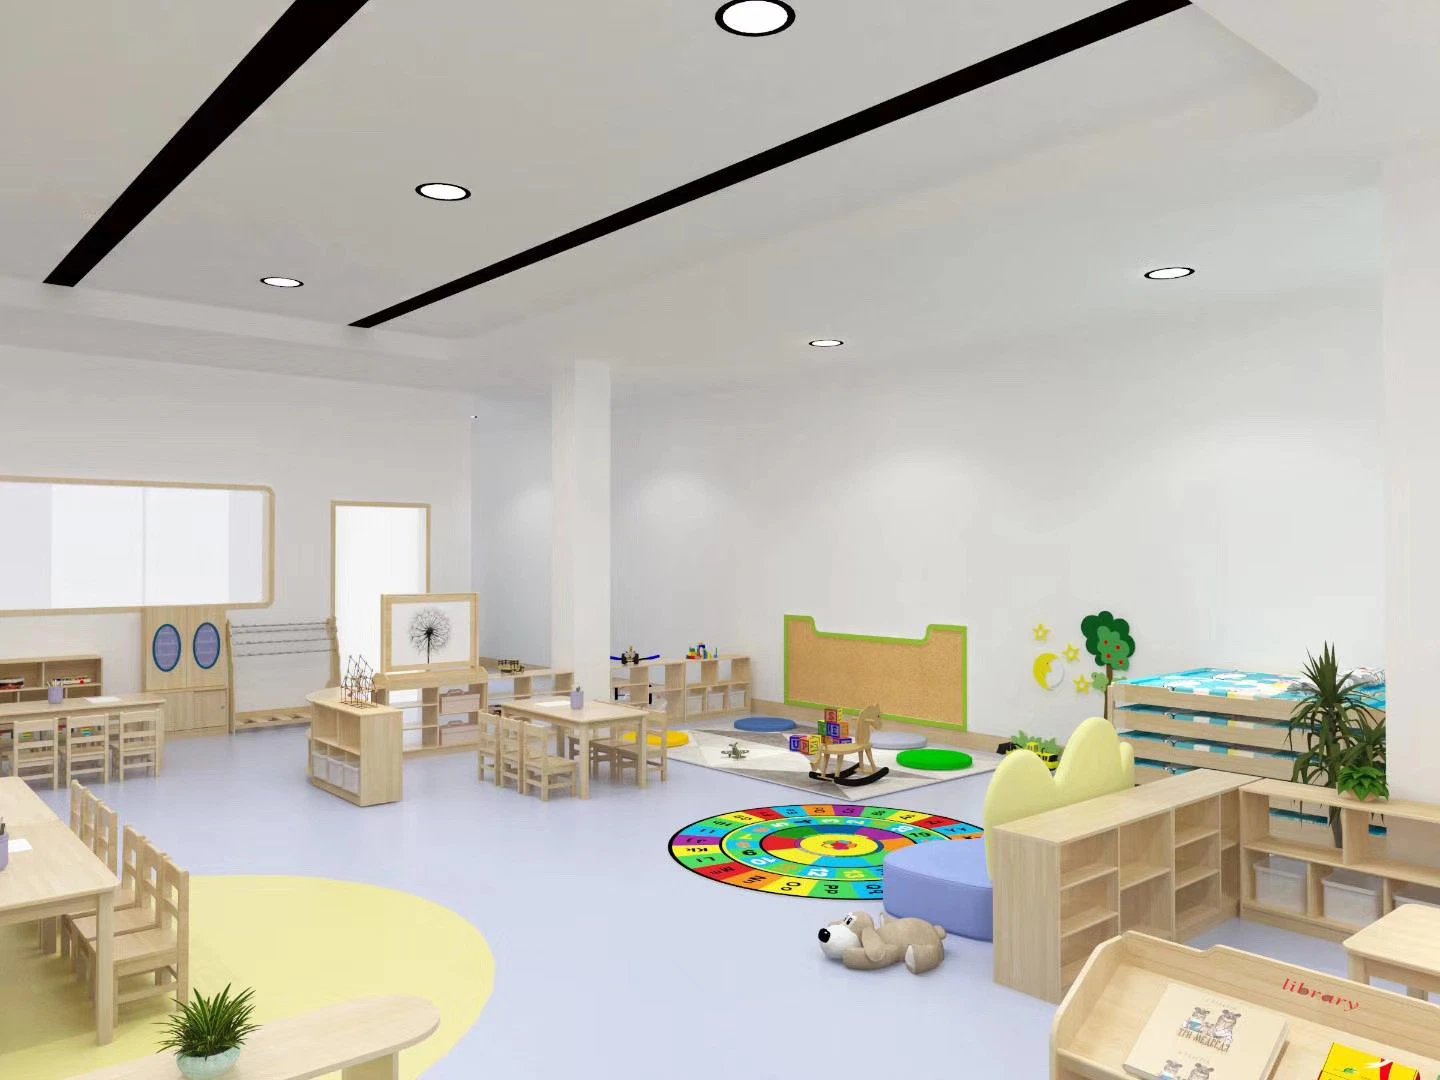 Usine de gros en Chine de mobilier pour enfants pour la maternelle, meubles en bois pour bébés, tables et chaises pour la maternelle, mobilier de chaise pour étudiants en classe